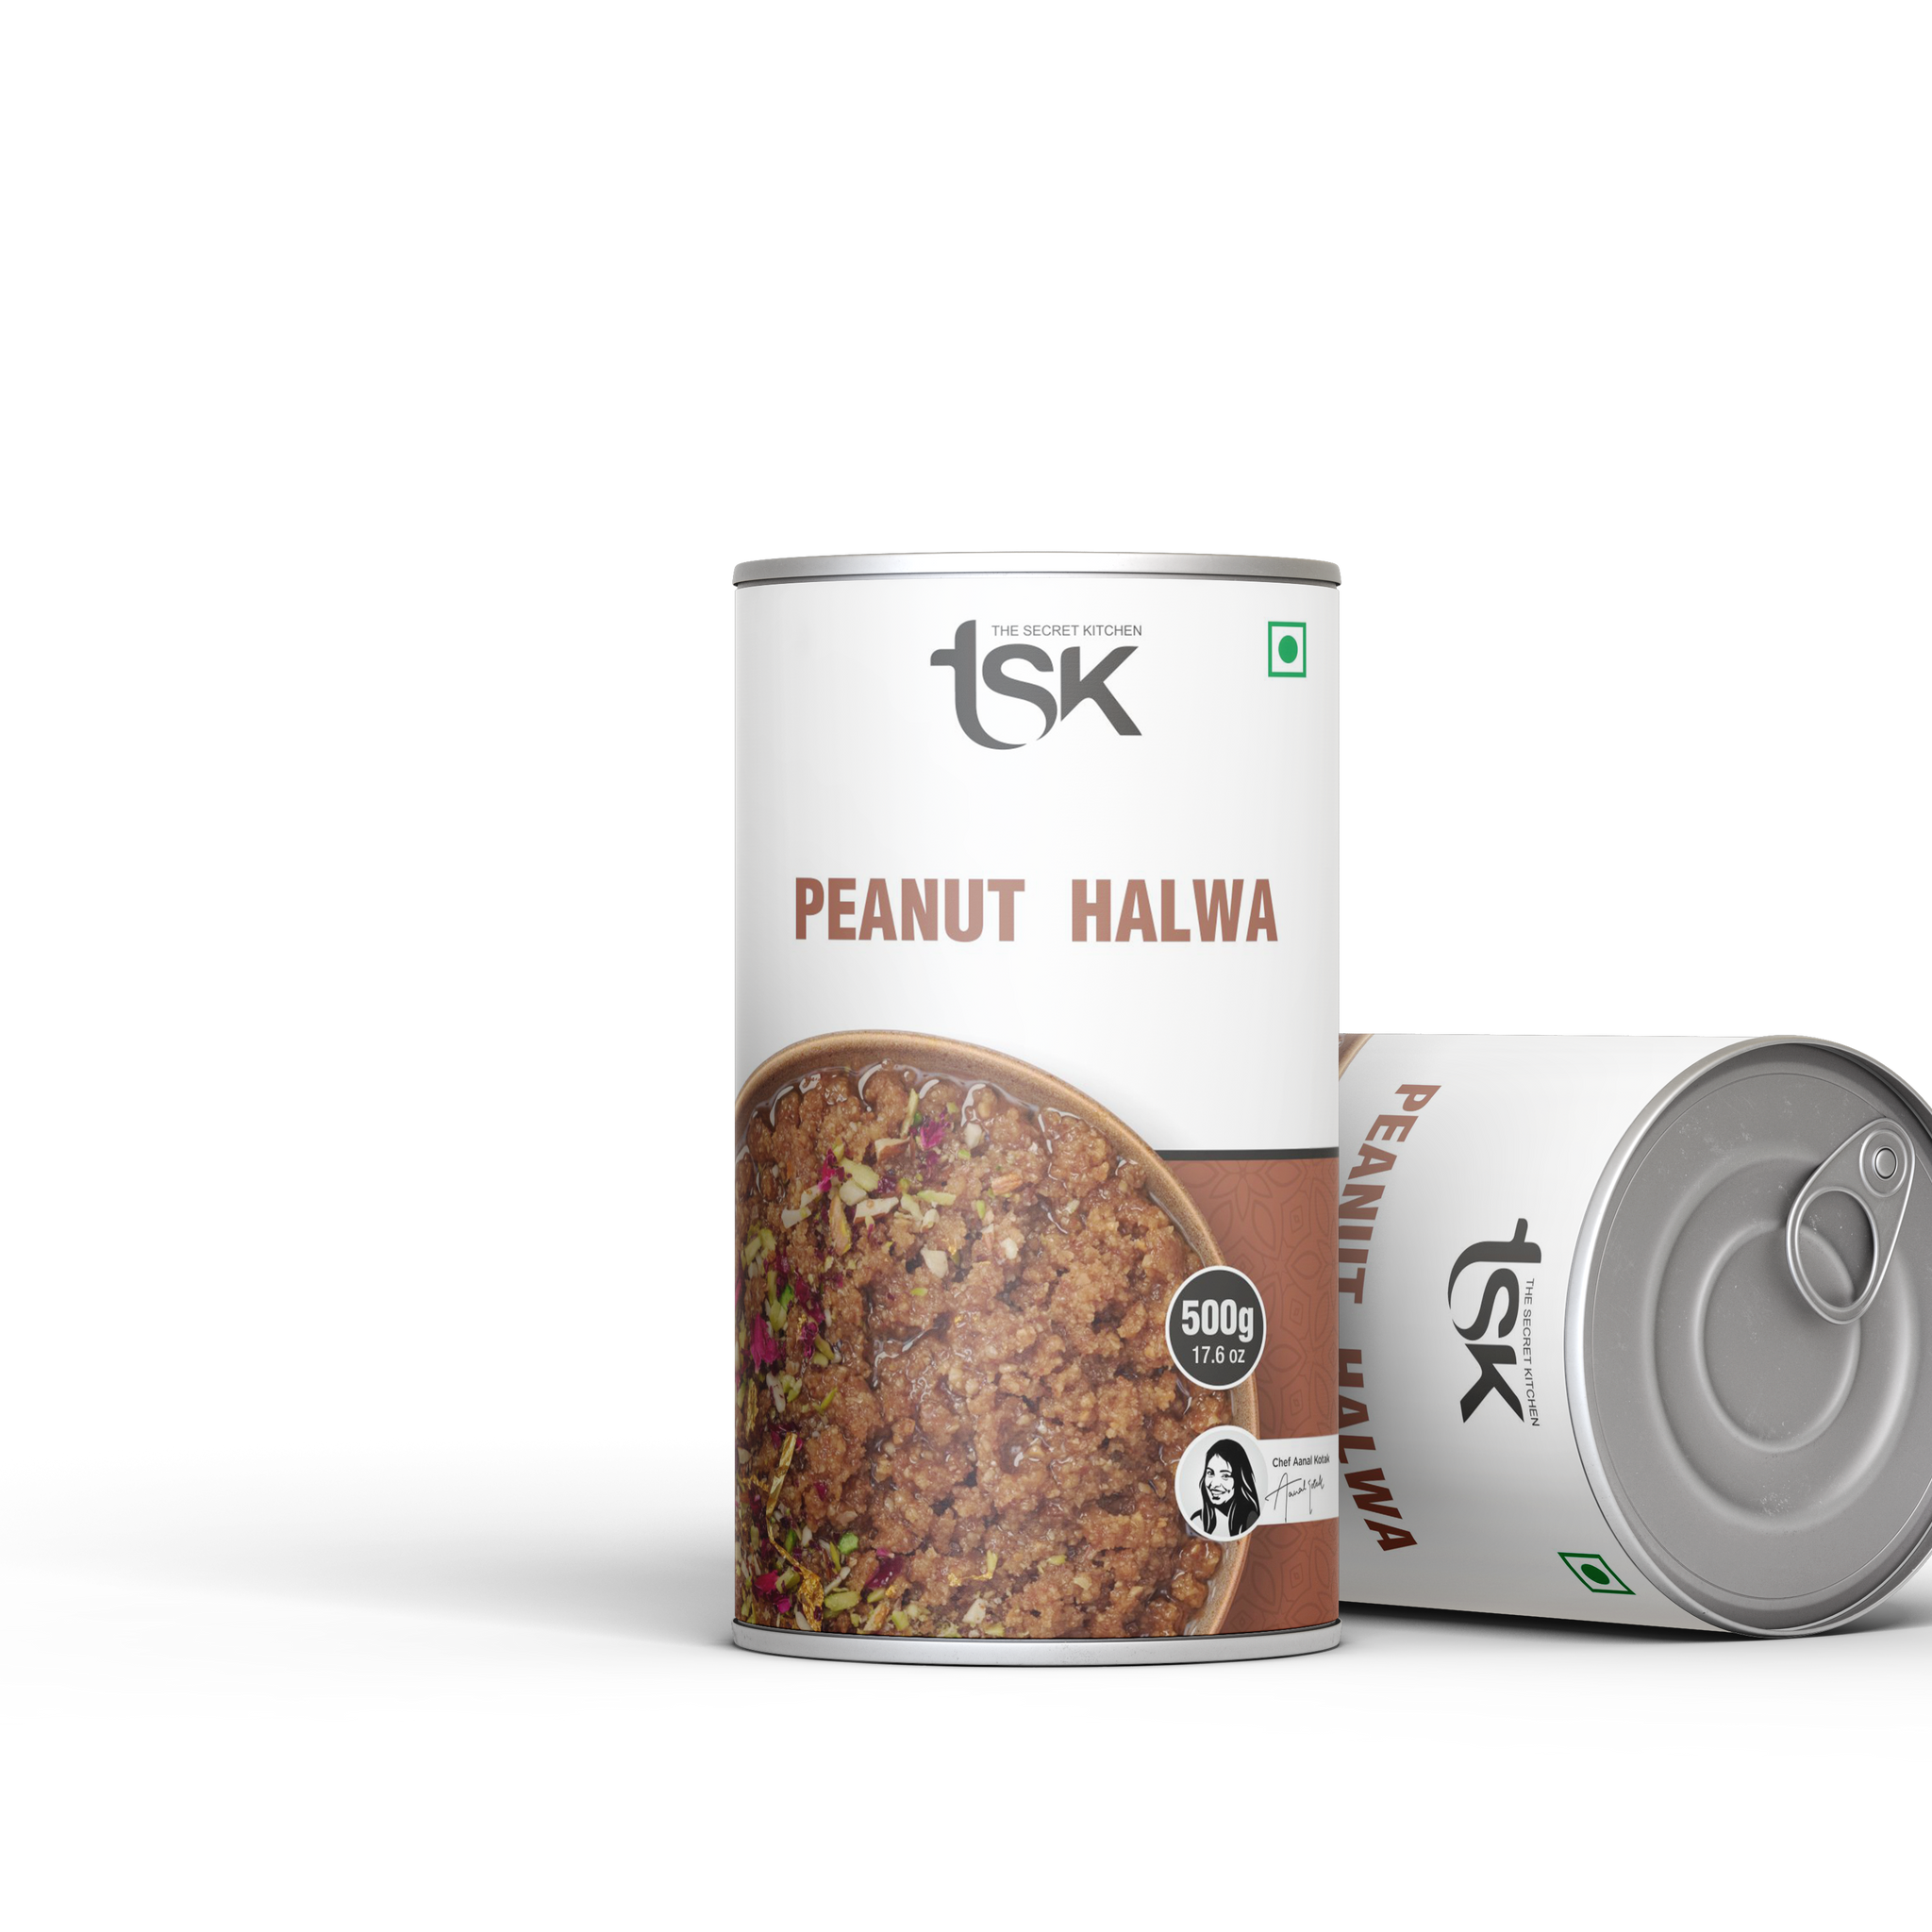 Peanut Halwa